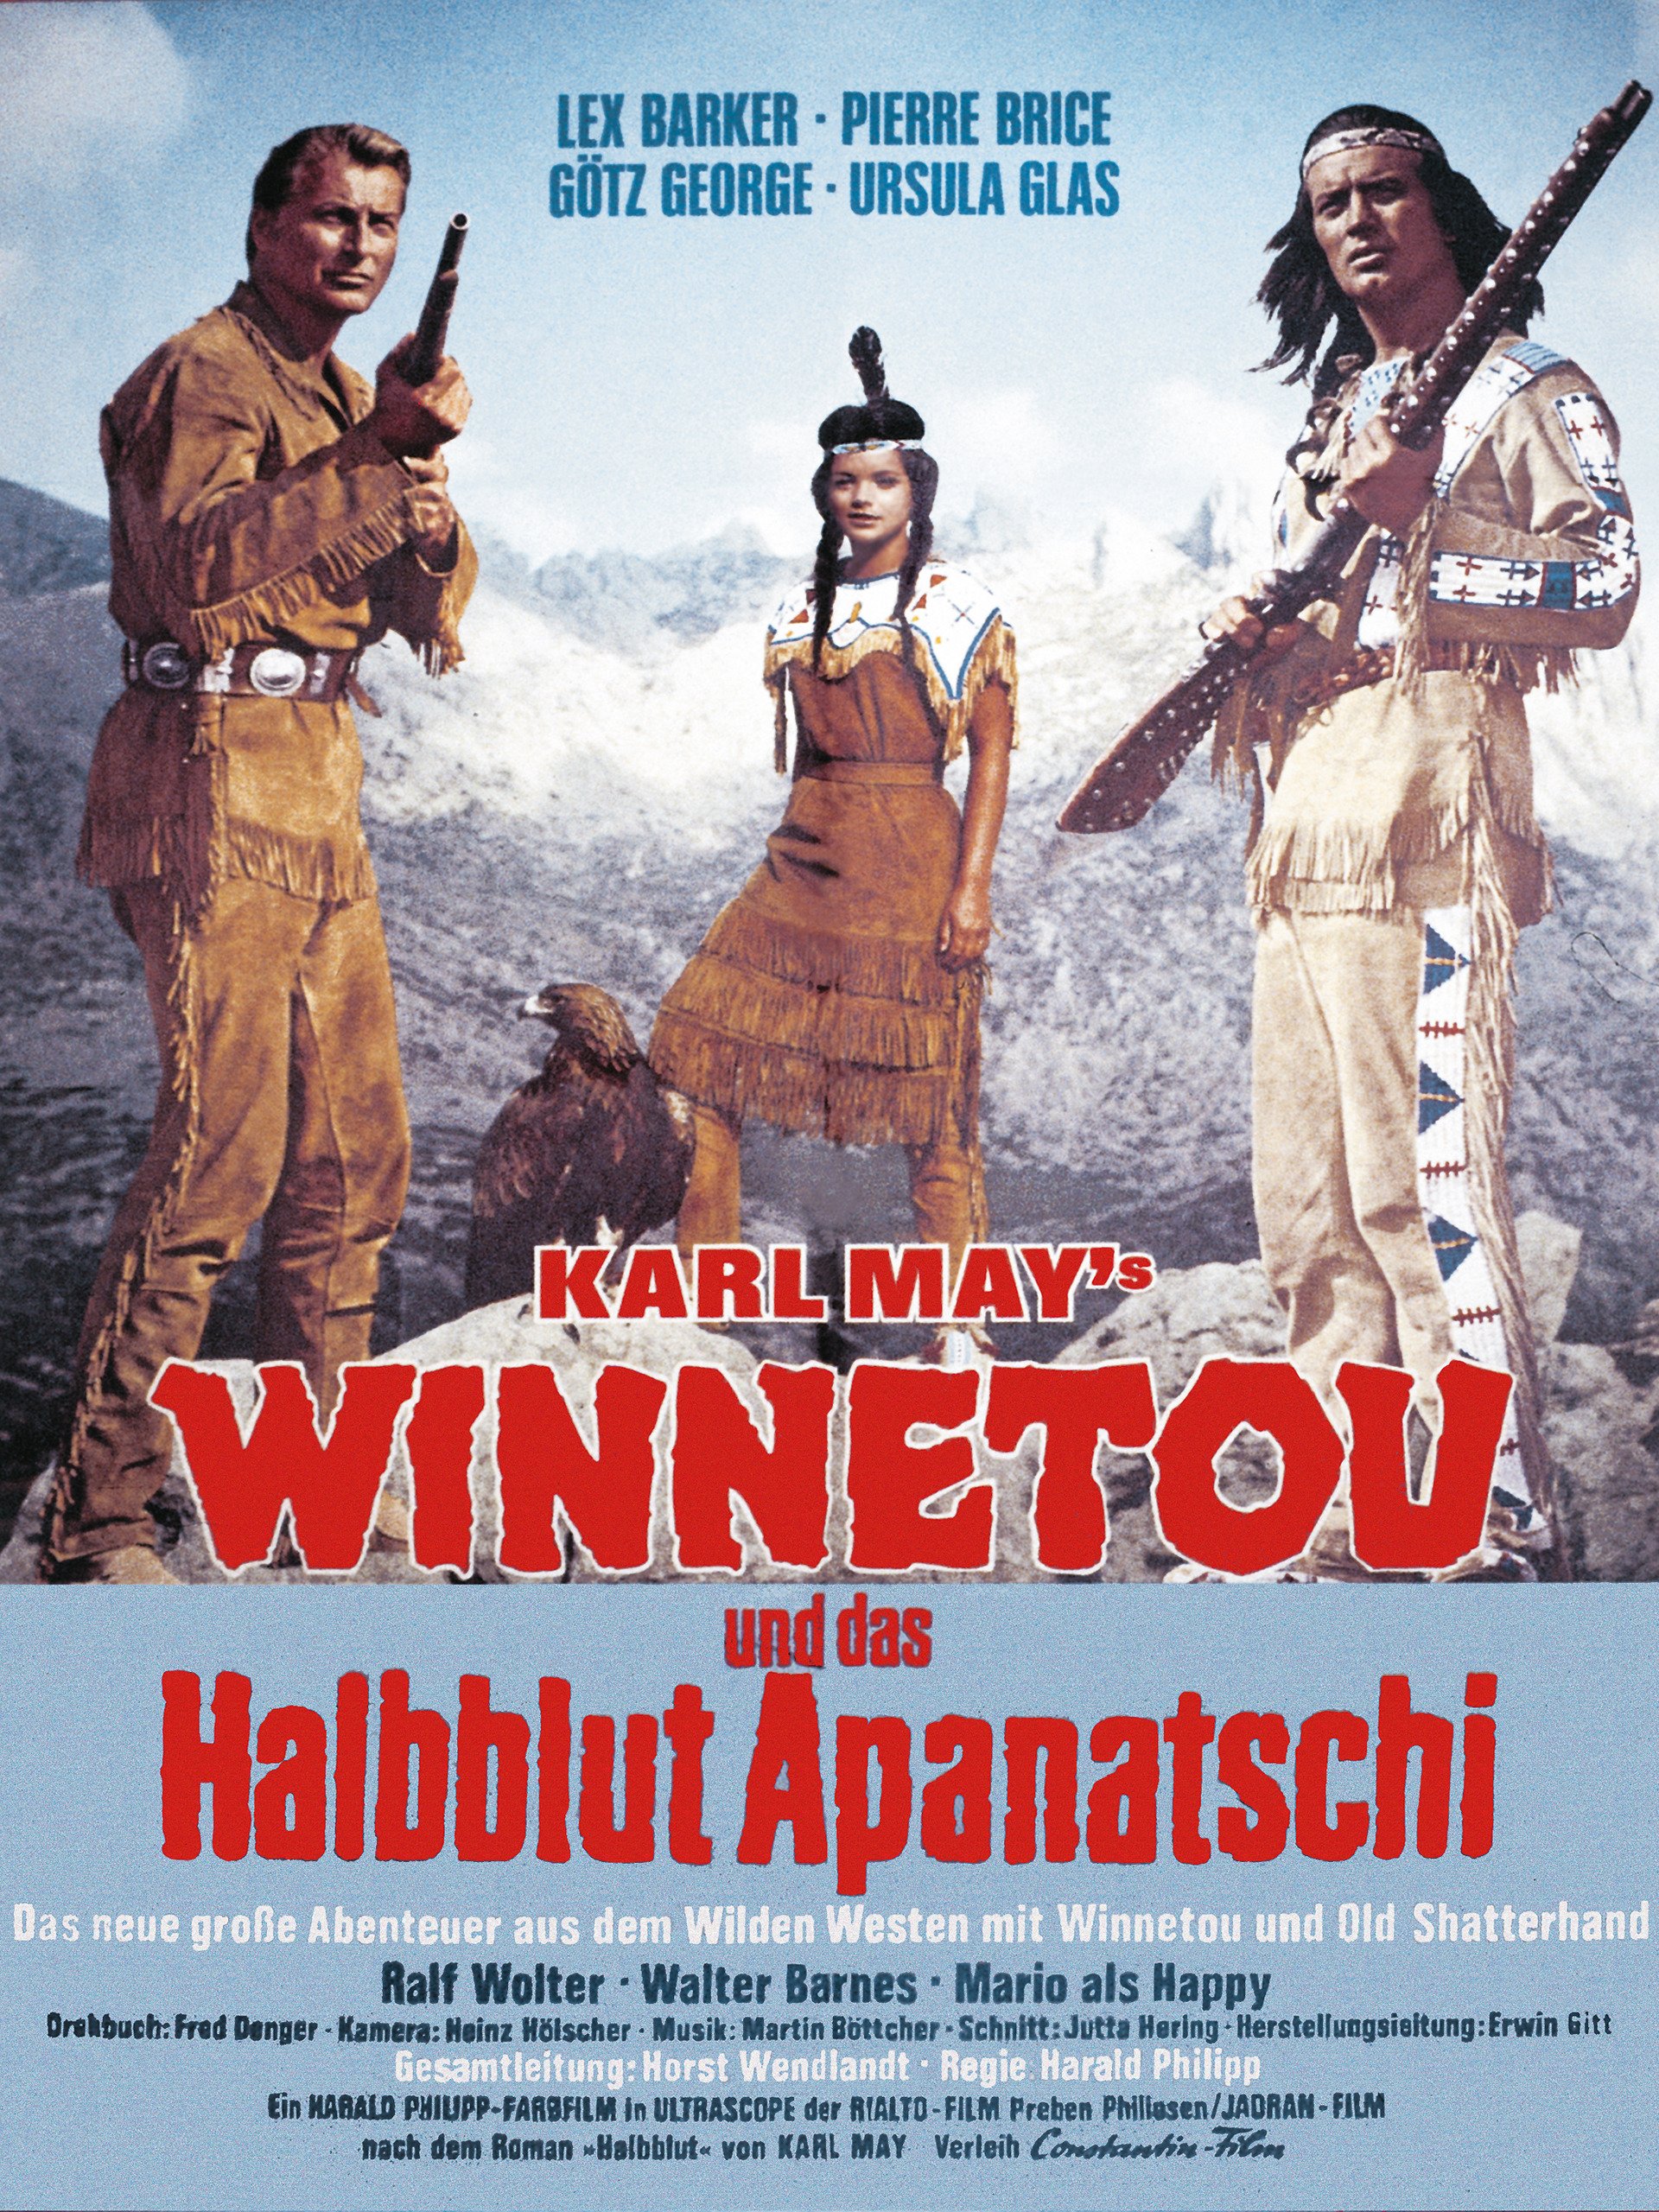 Winnetou und das Halbblut Apanatschi movie poster